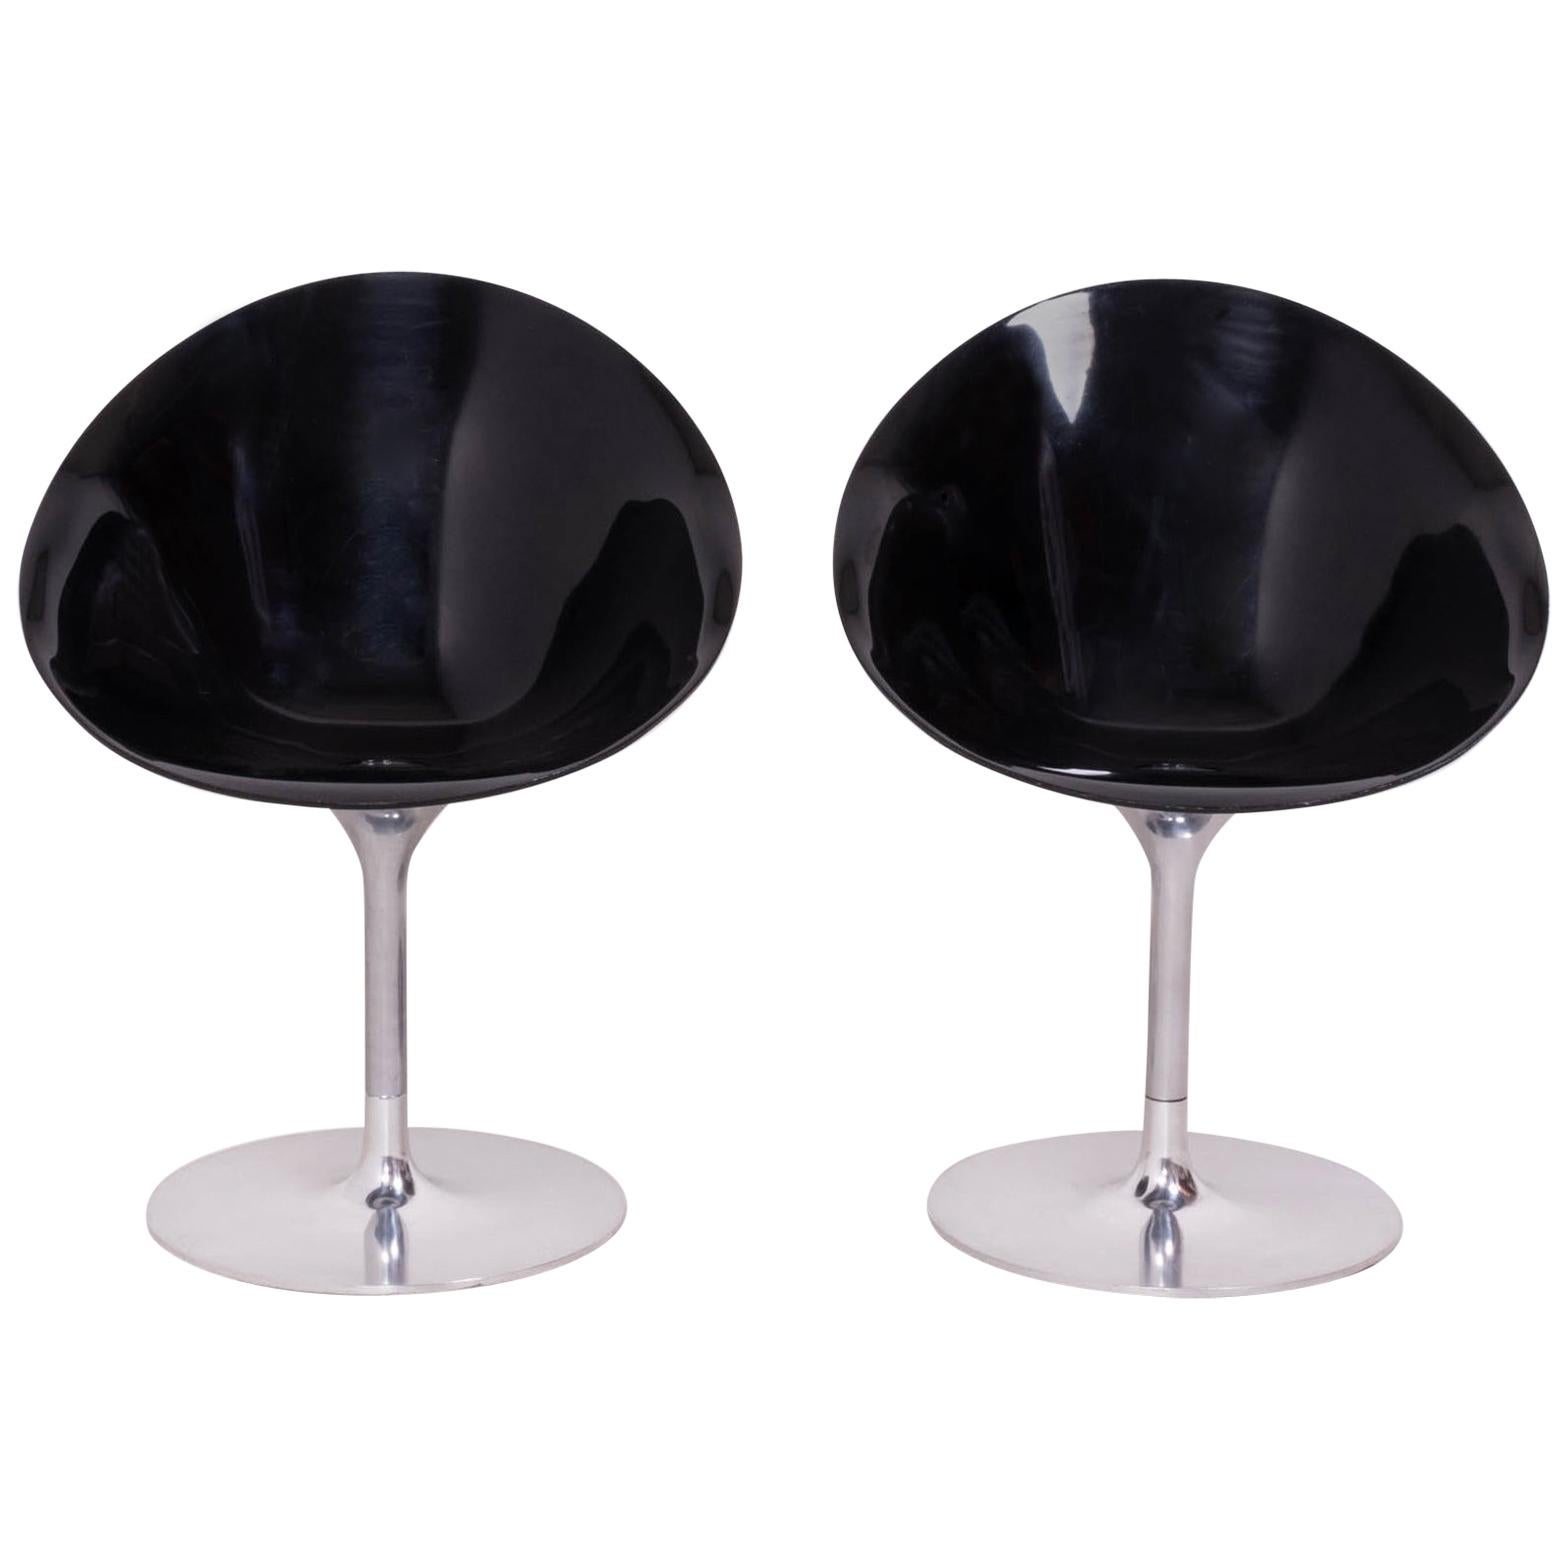 Conçue à l'origine par Philippe Starck pour Kartell en 1999, la chaise Eros/S s'inspire des années 1960 mais est rapidement devenue un classique du design moderne. 

De forme organique, l'assise ovale est fabriquée en polycarbonate noir brillant